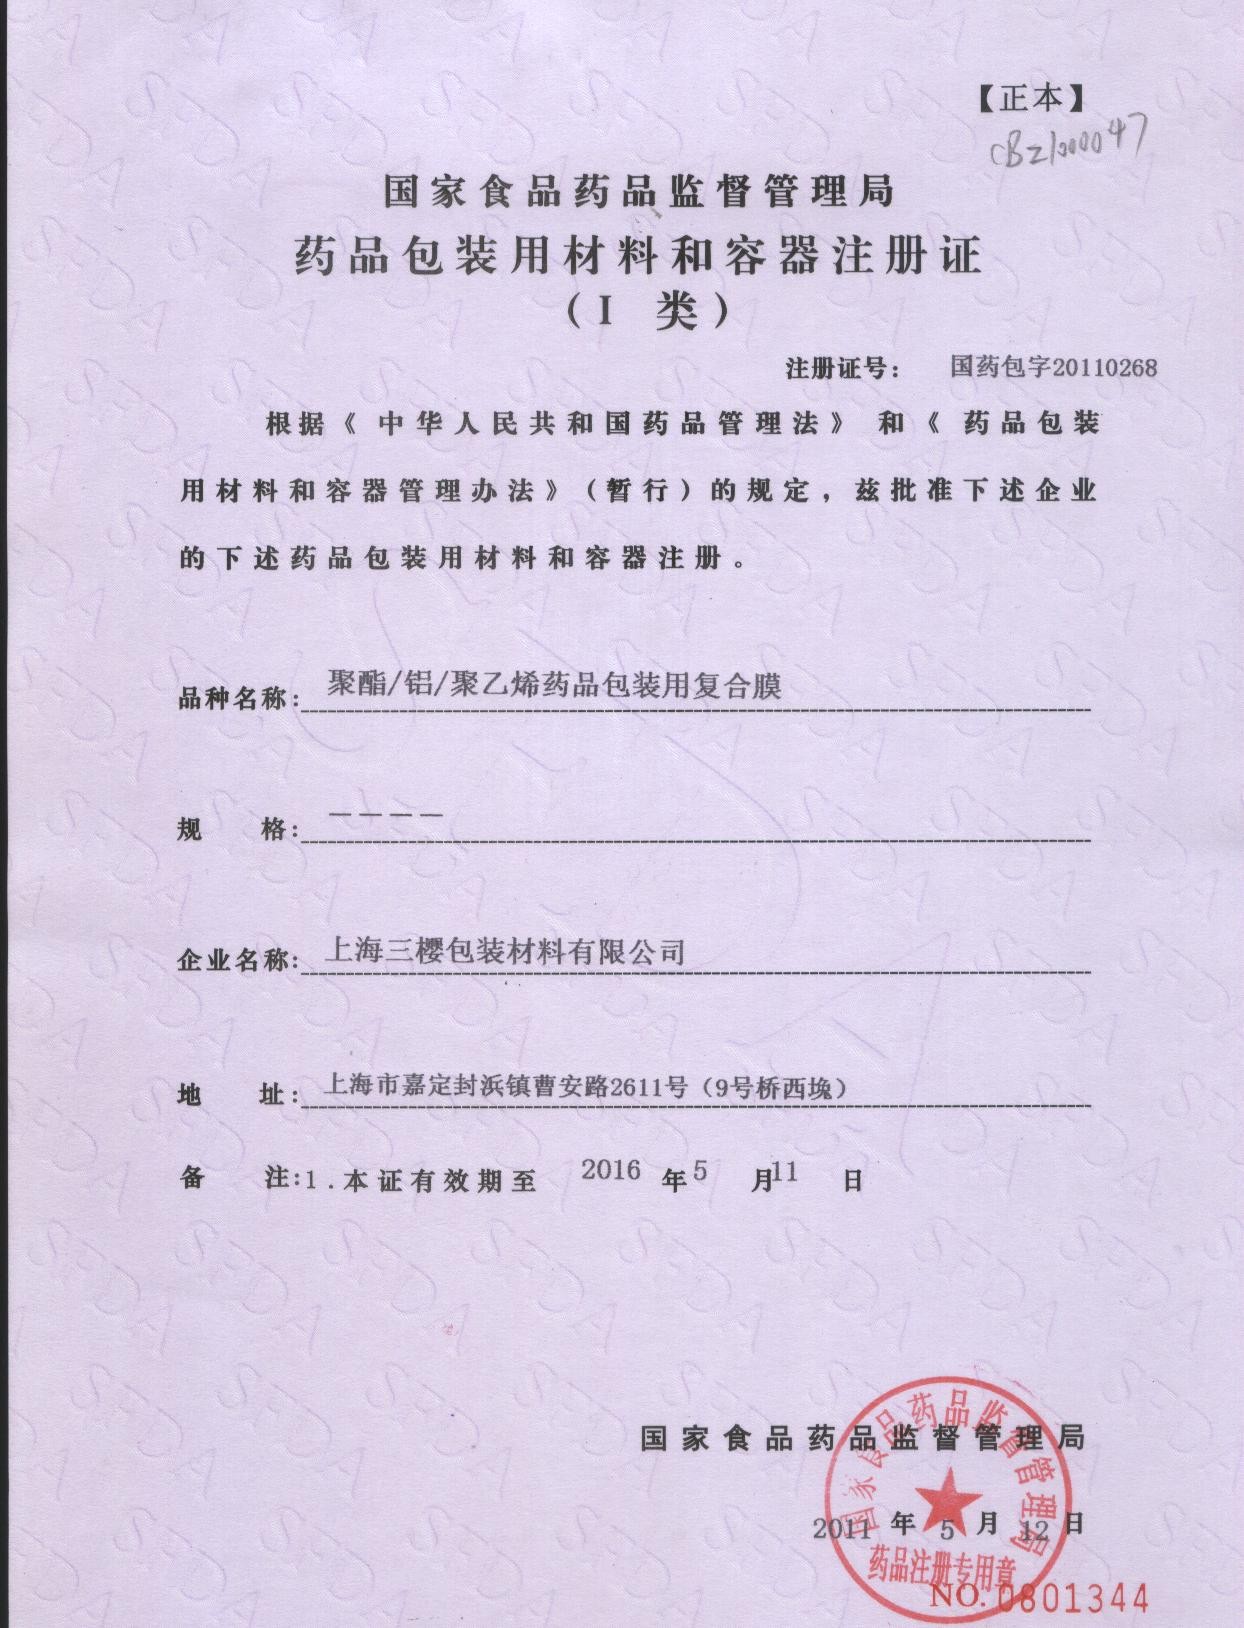 الصين San Ying Packaging(Jiang Su)CO.,LTD (Shanghai SanYing Packaging Material Co.,Ltd.) الشهادات